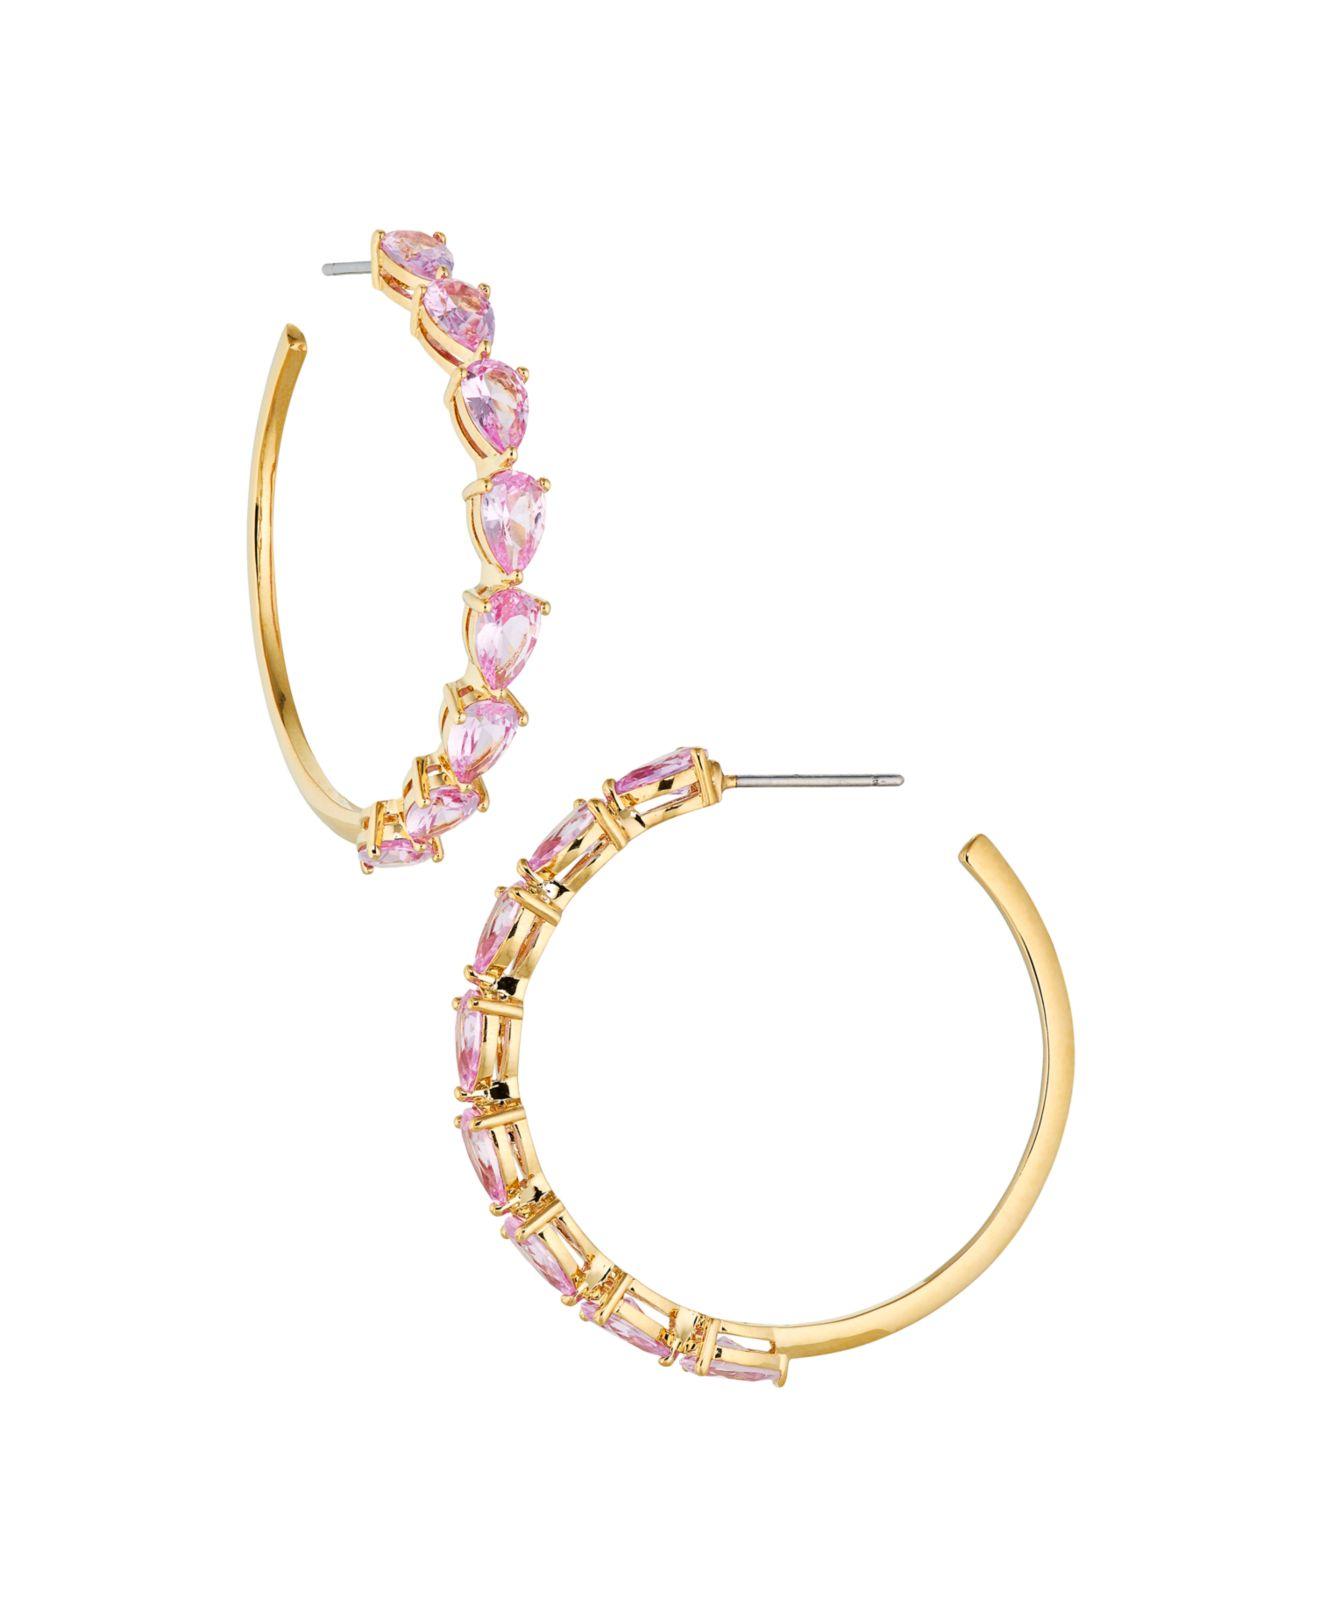 Macy's Satin Twist Hoop Earrings in 10k Tri-Tone Gold - Macy's